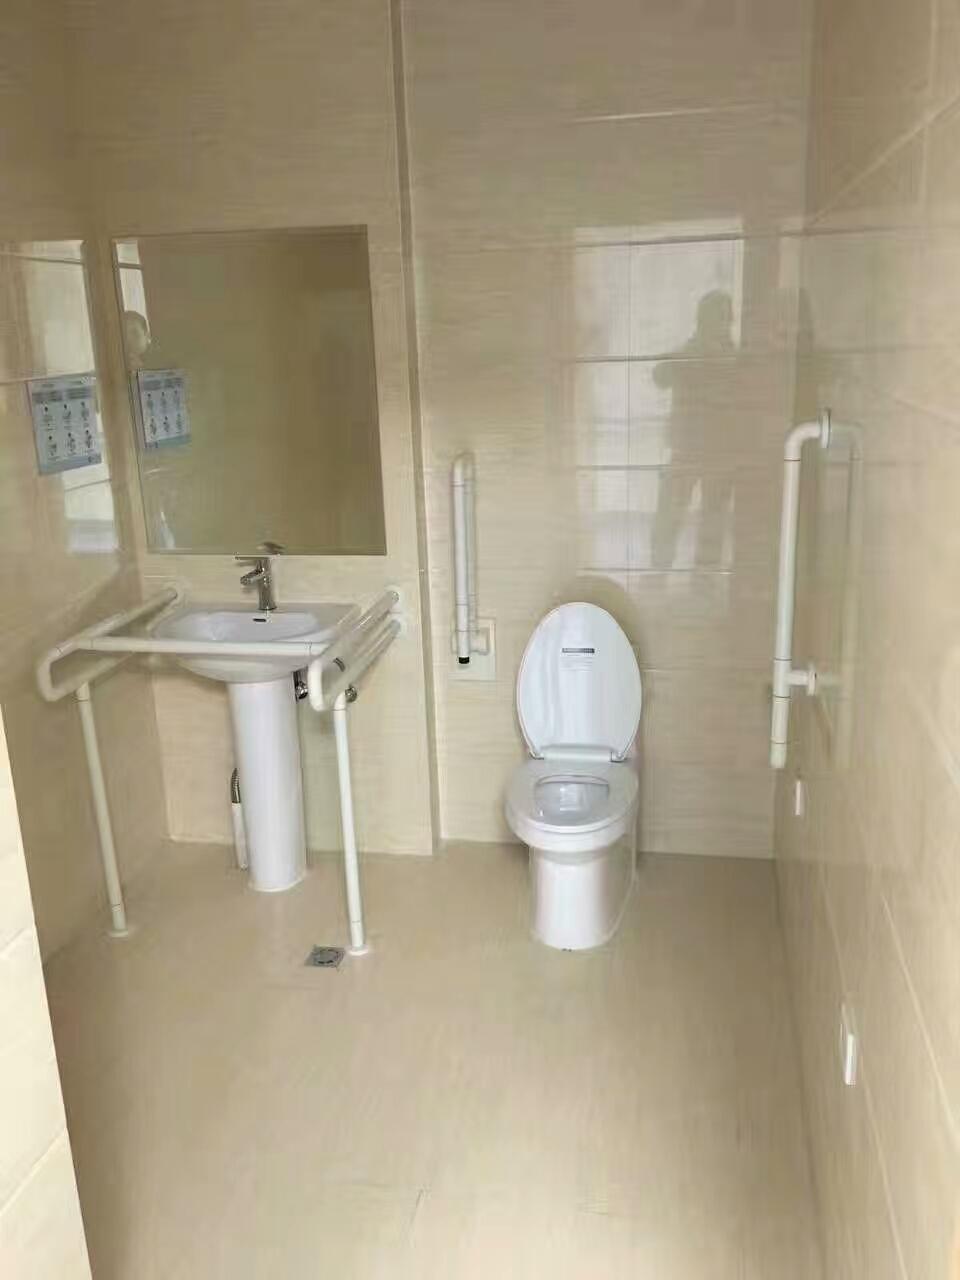 厕所无障碍扶手A卫生间安全抓杆A养老院卫生间无障碍扶手